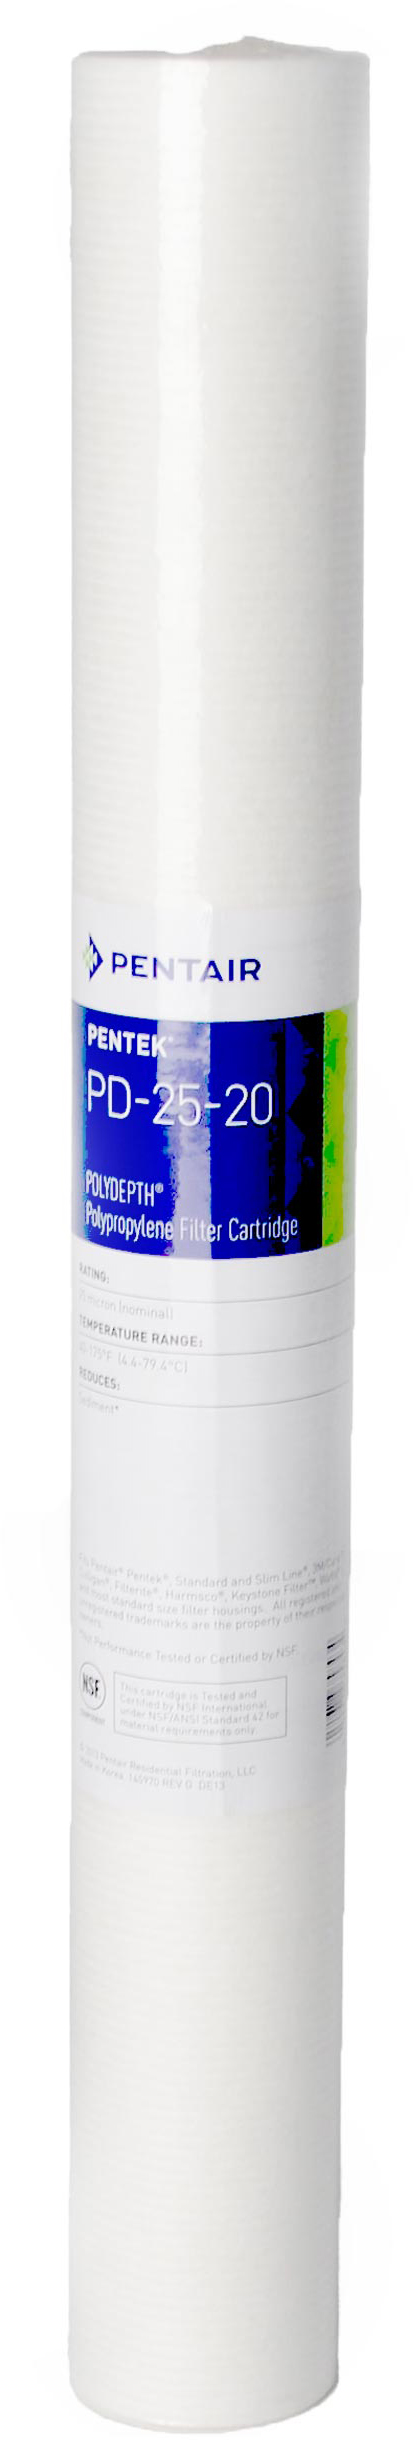 Картридж для фильтра Pentek PD-5-20 Polydepth (155756-43) в интернет-магазине, главное фото